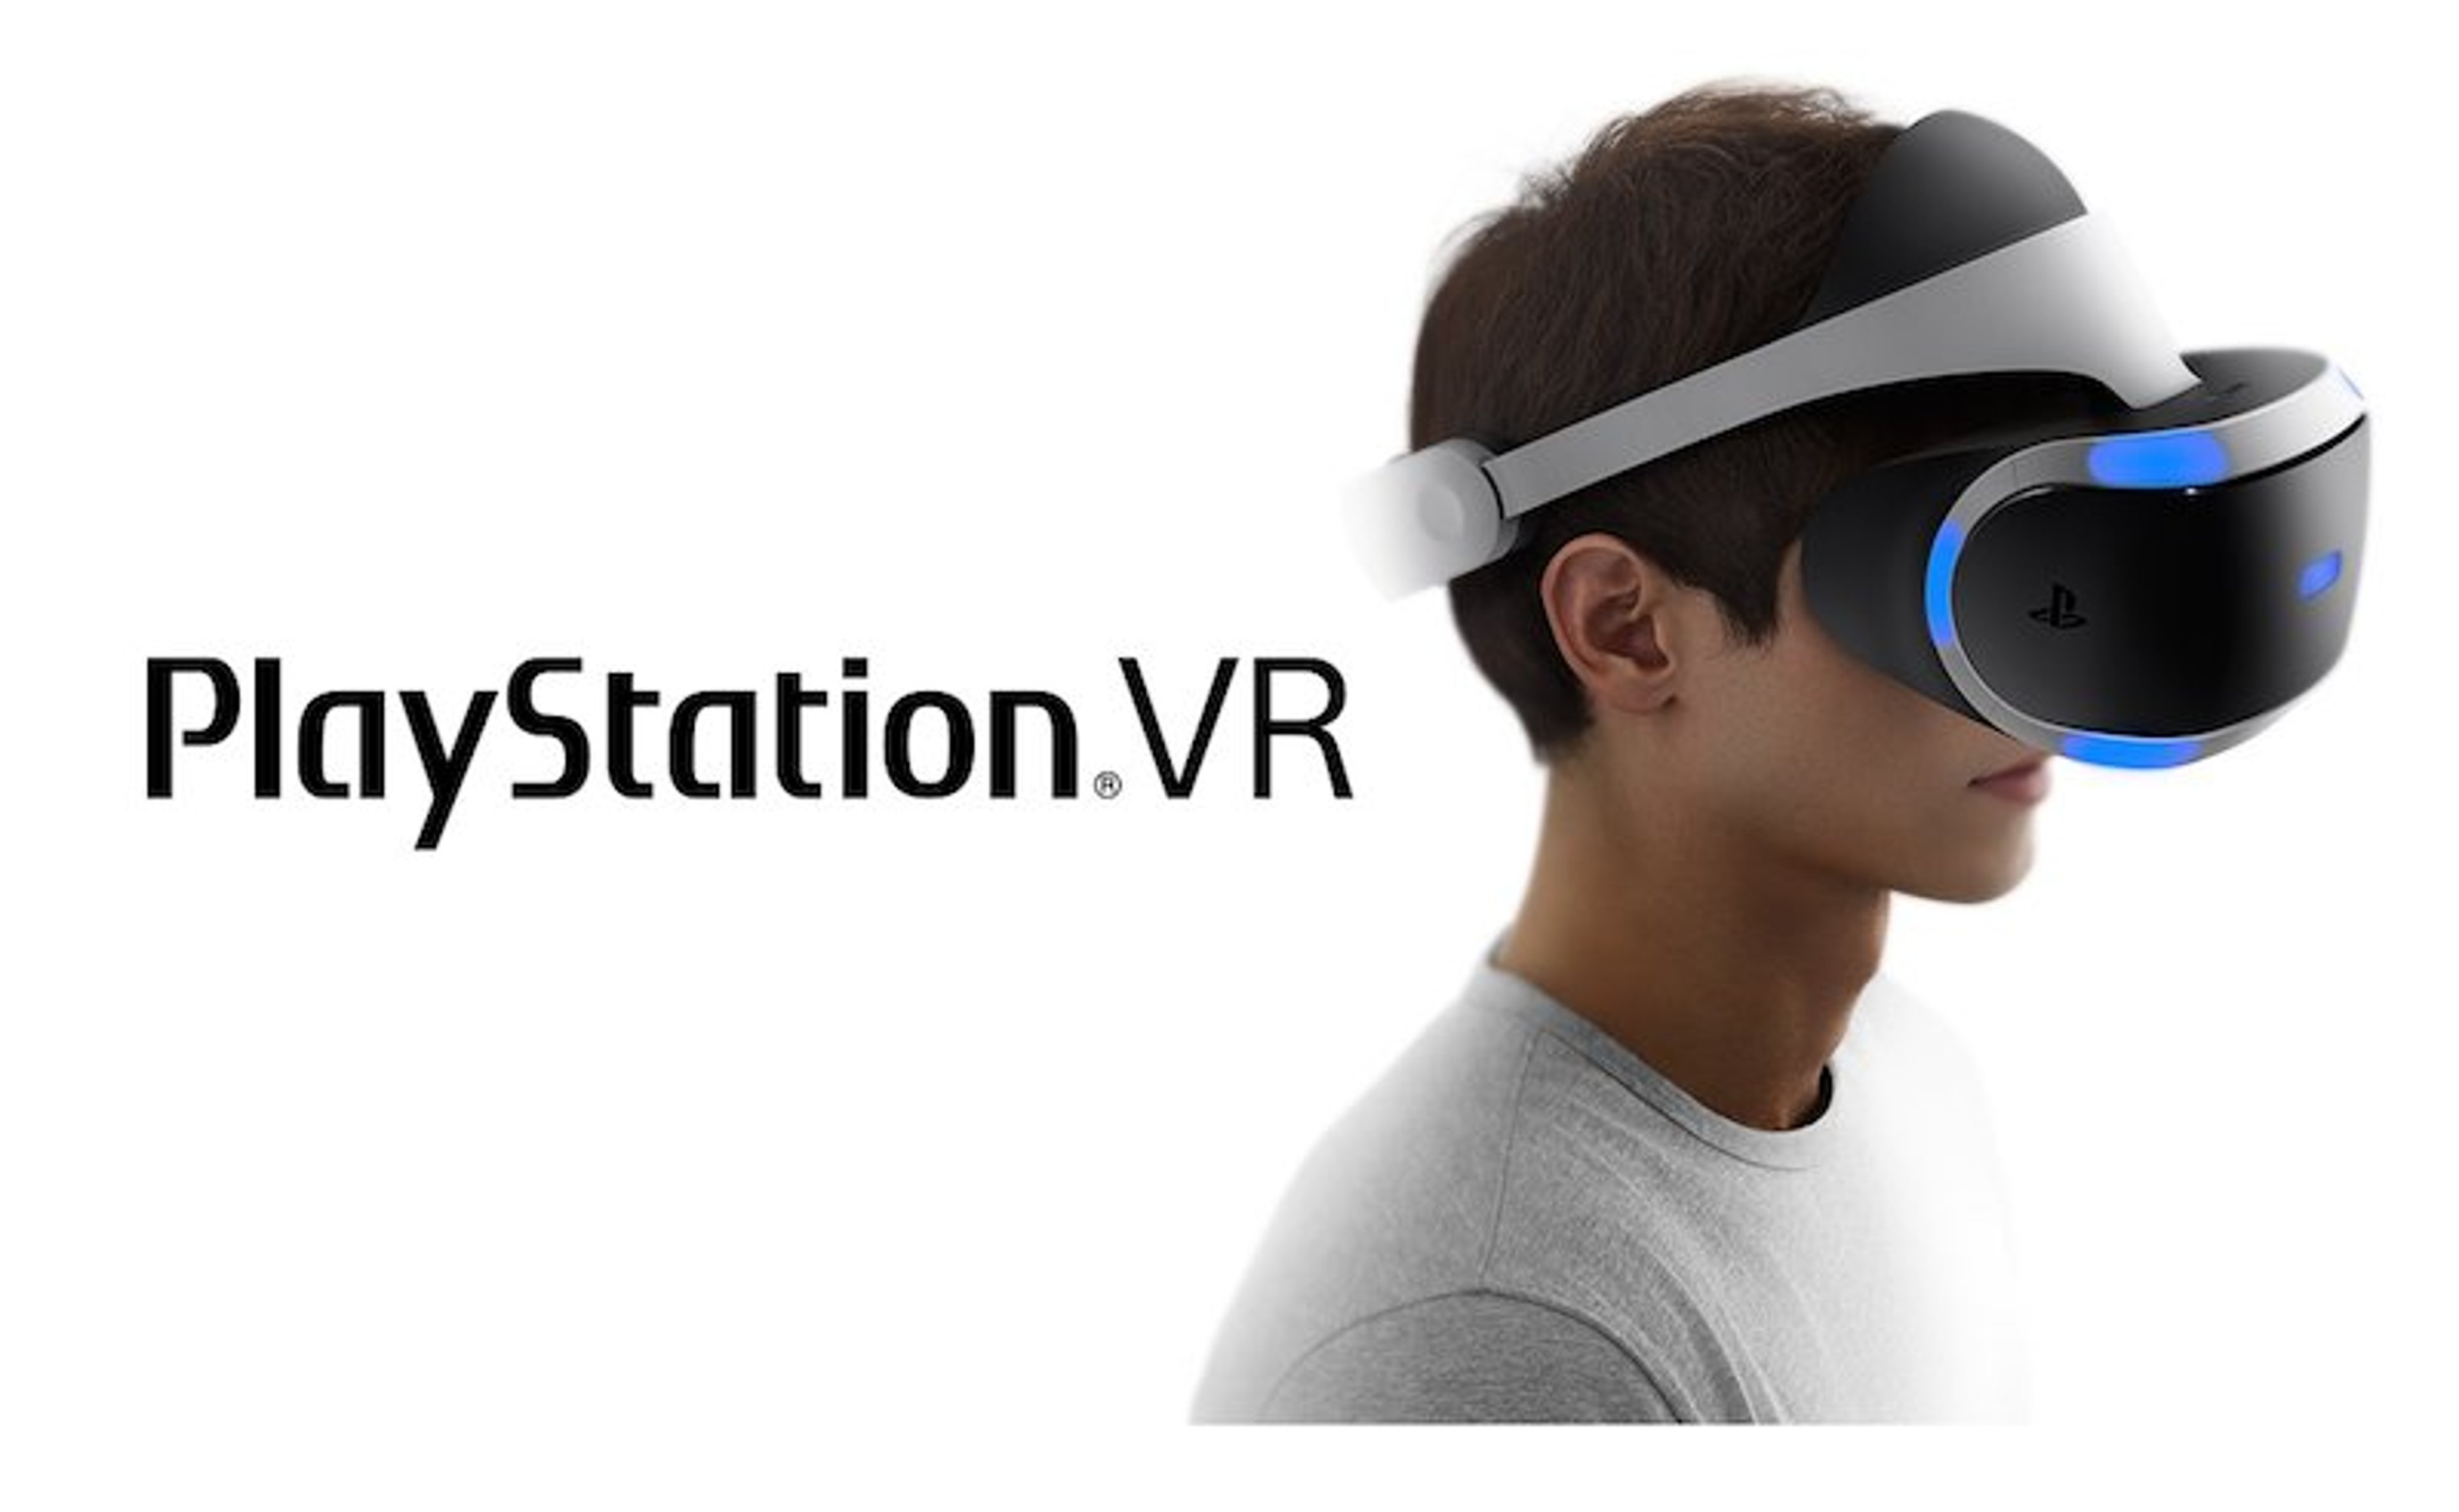 Pre-ordini Playstation VR è già sold-out e fino al debutto non ce ne saranno altri